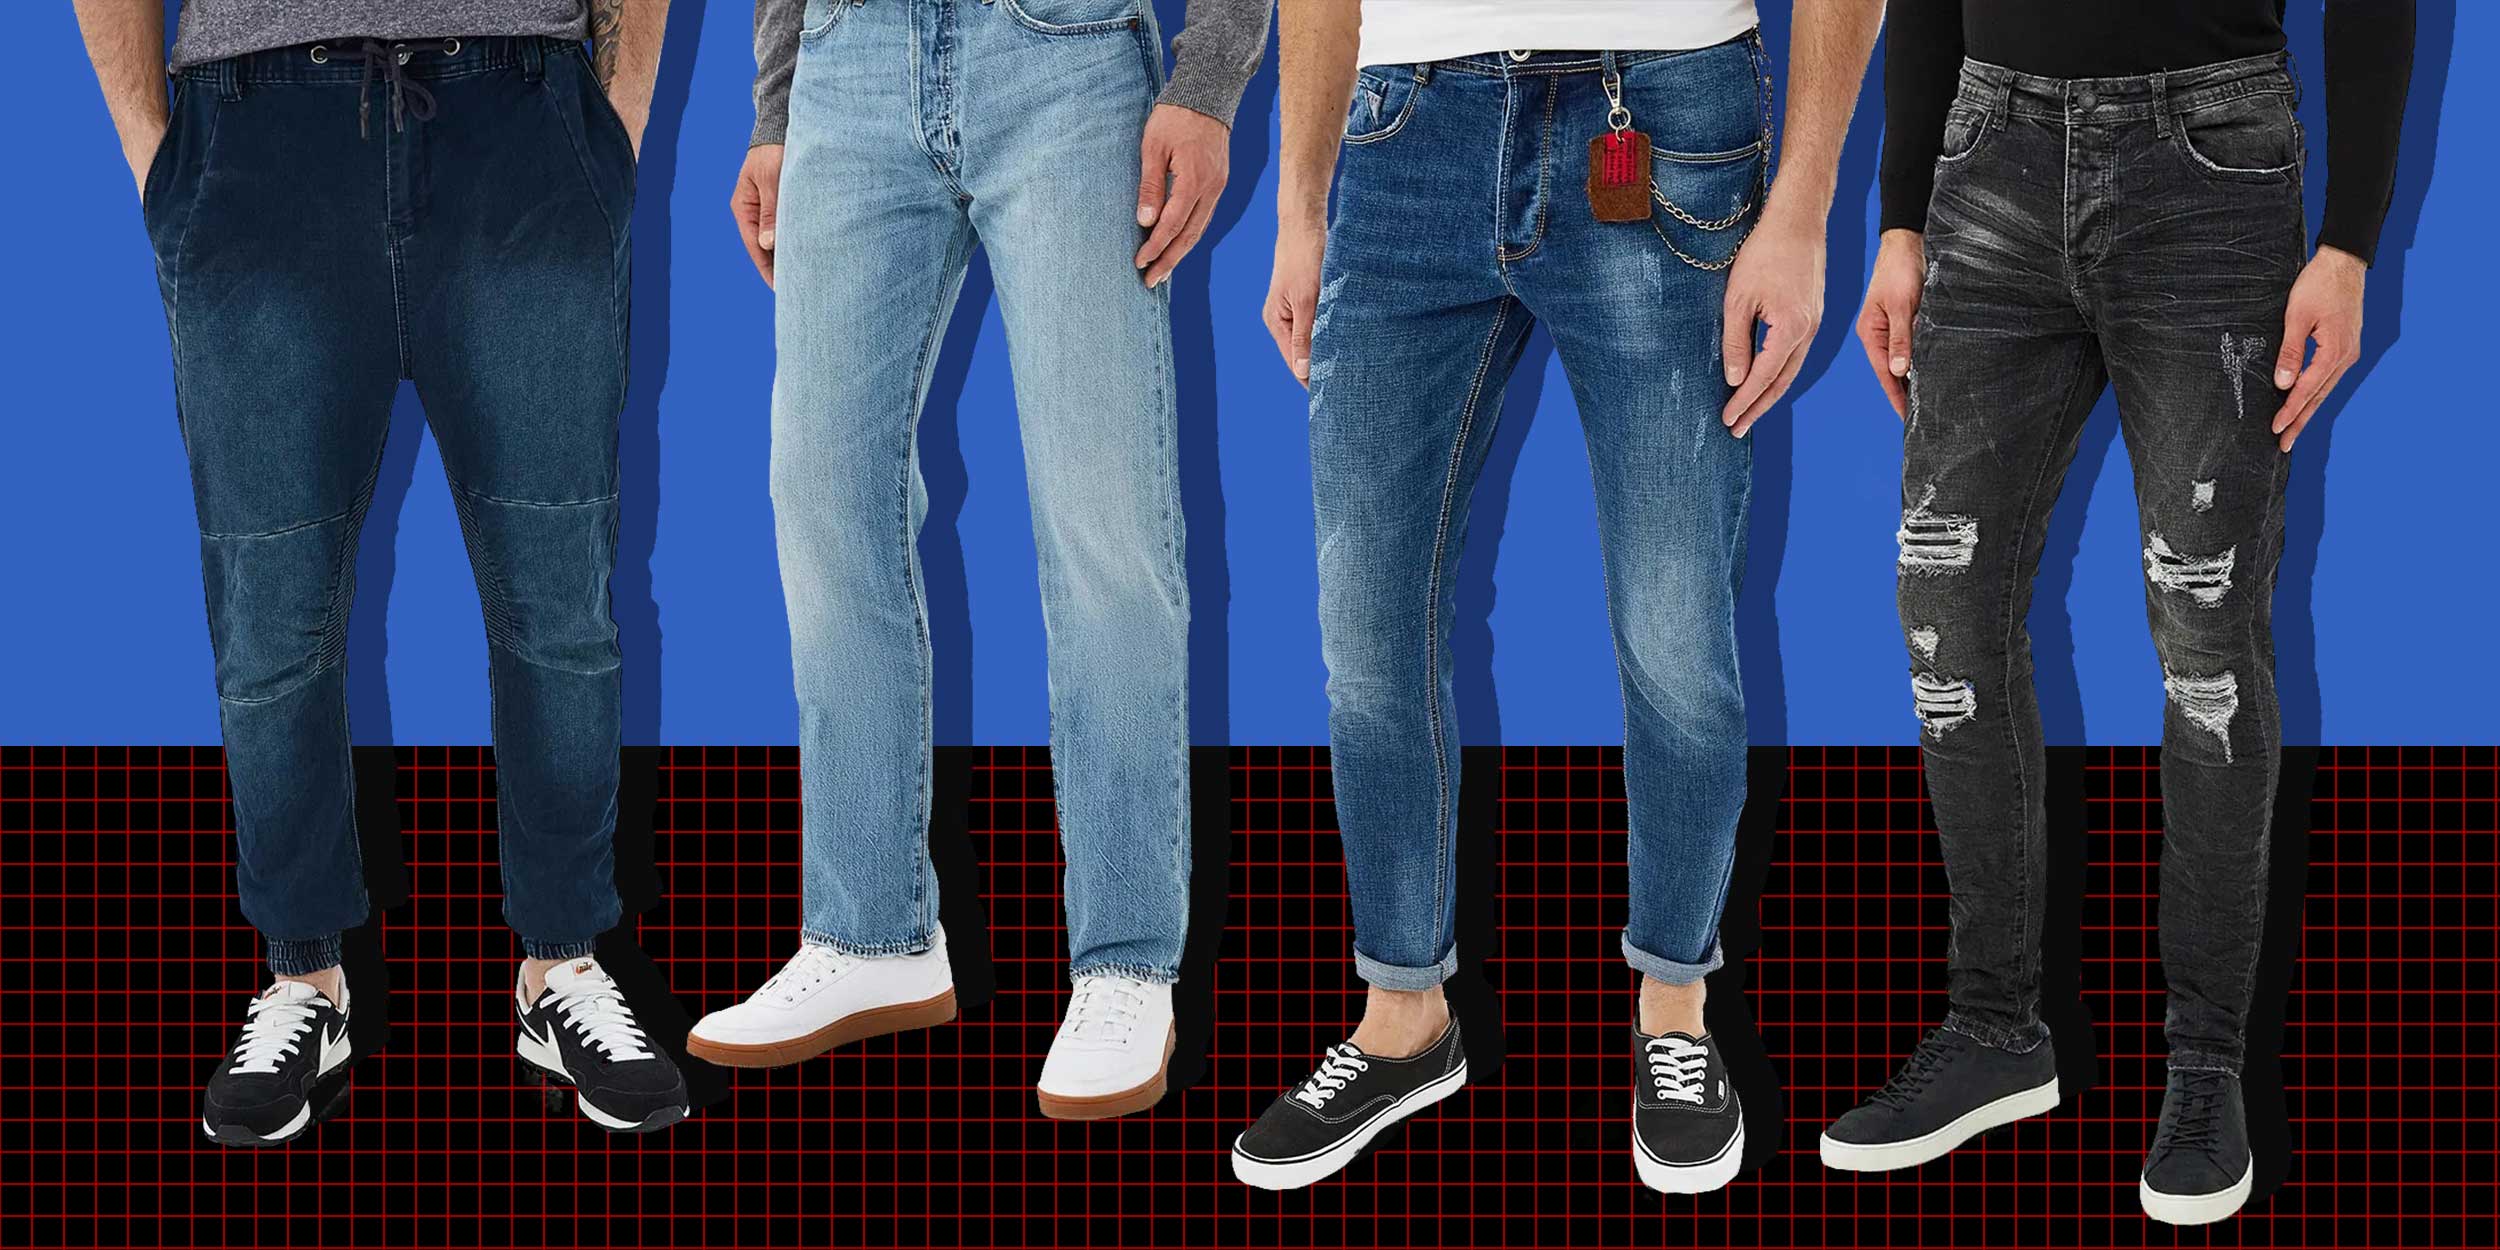 Название моделей джинсов мужских